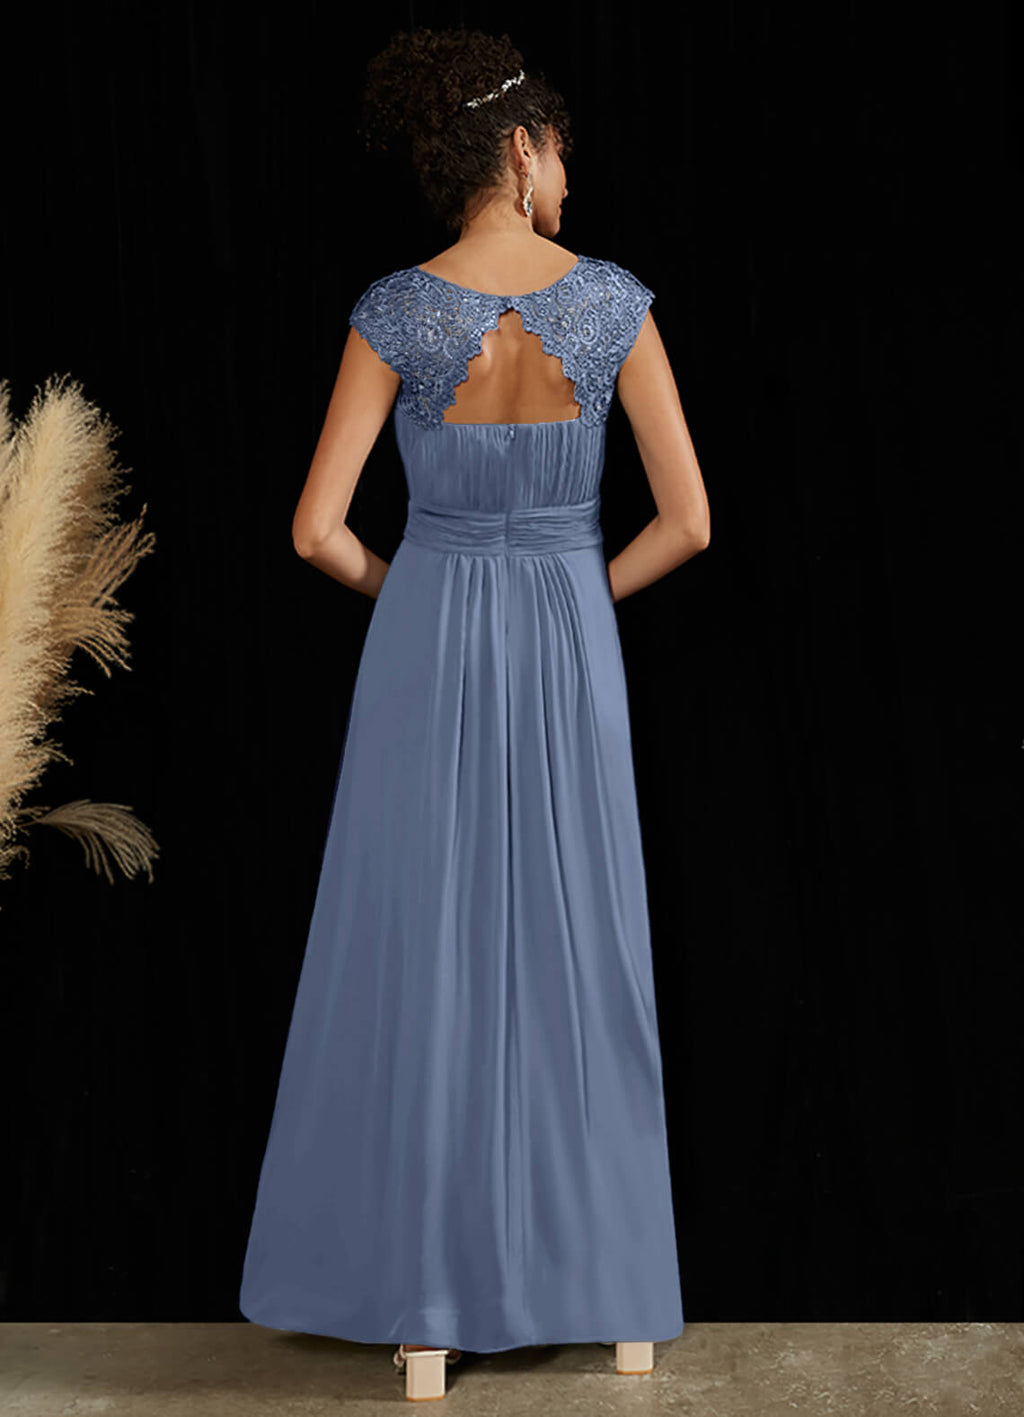 NZ Bridal Slate Blue Chiffon Flowy bridesmaid dresses 09996ep Ryan a